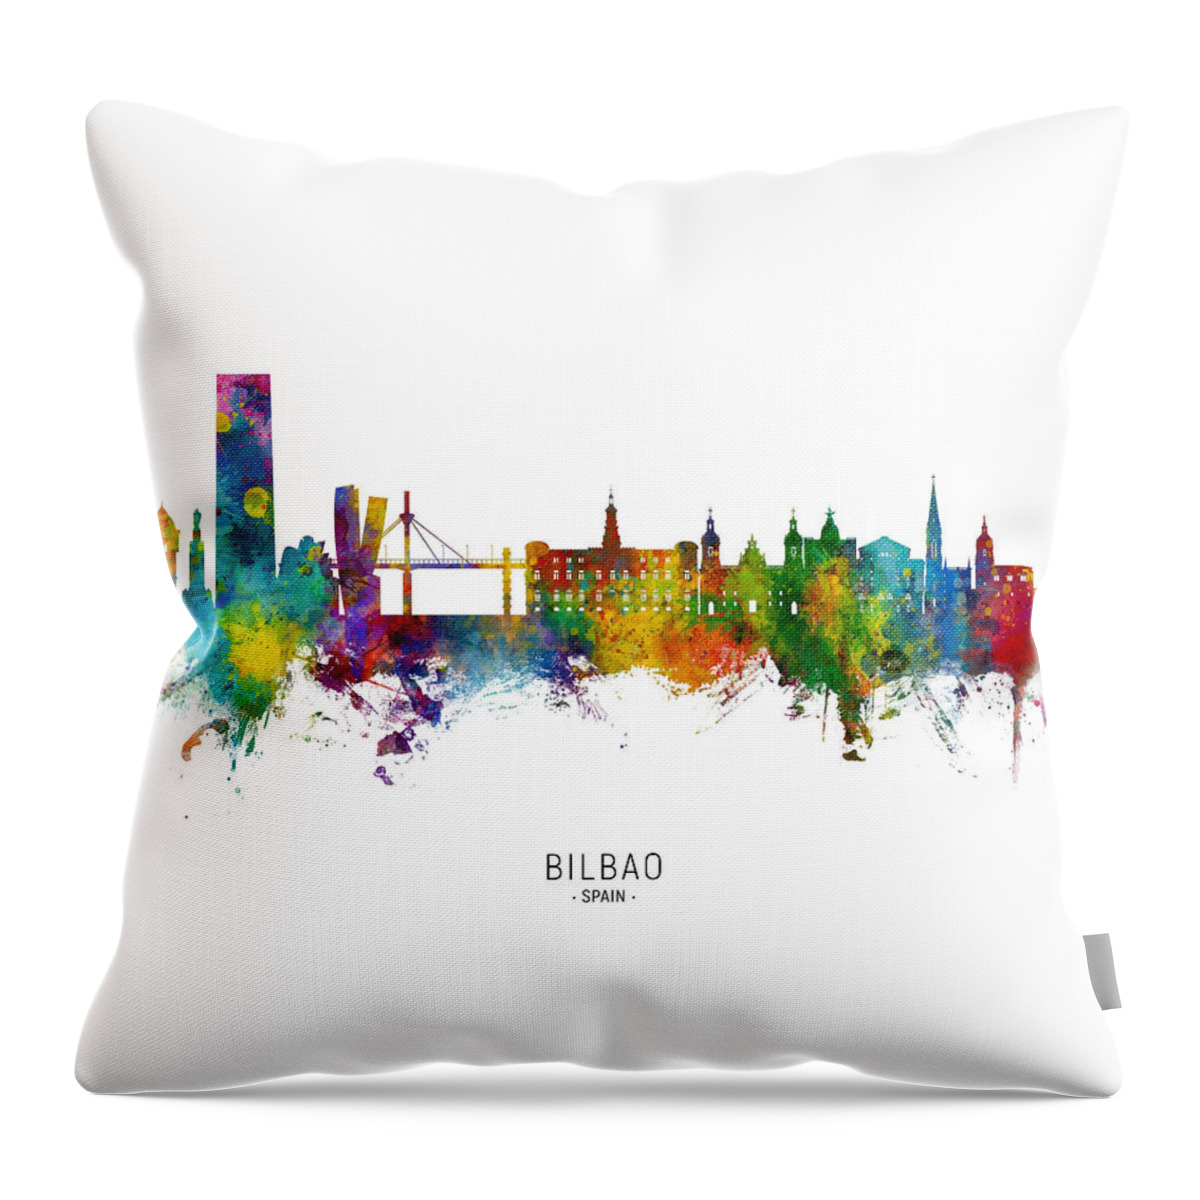 Bilbao Throw Pillow featuring the digital art Bilbao Spain Skyline #7 by Michael Tompsett